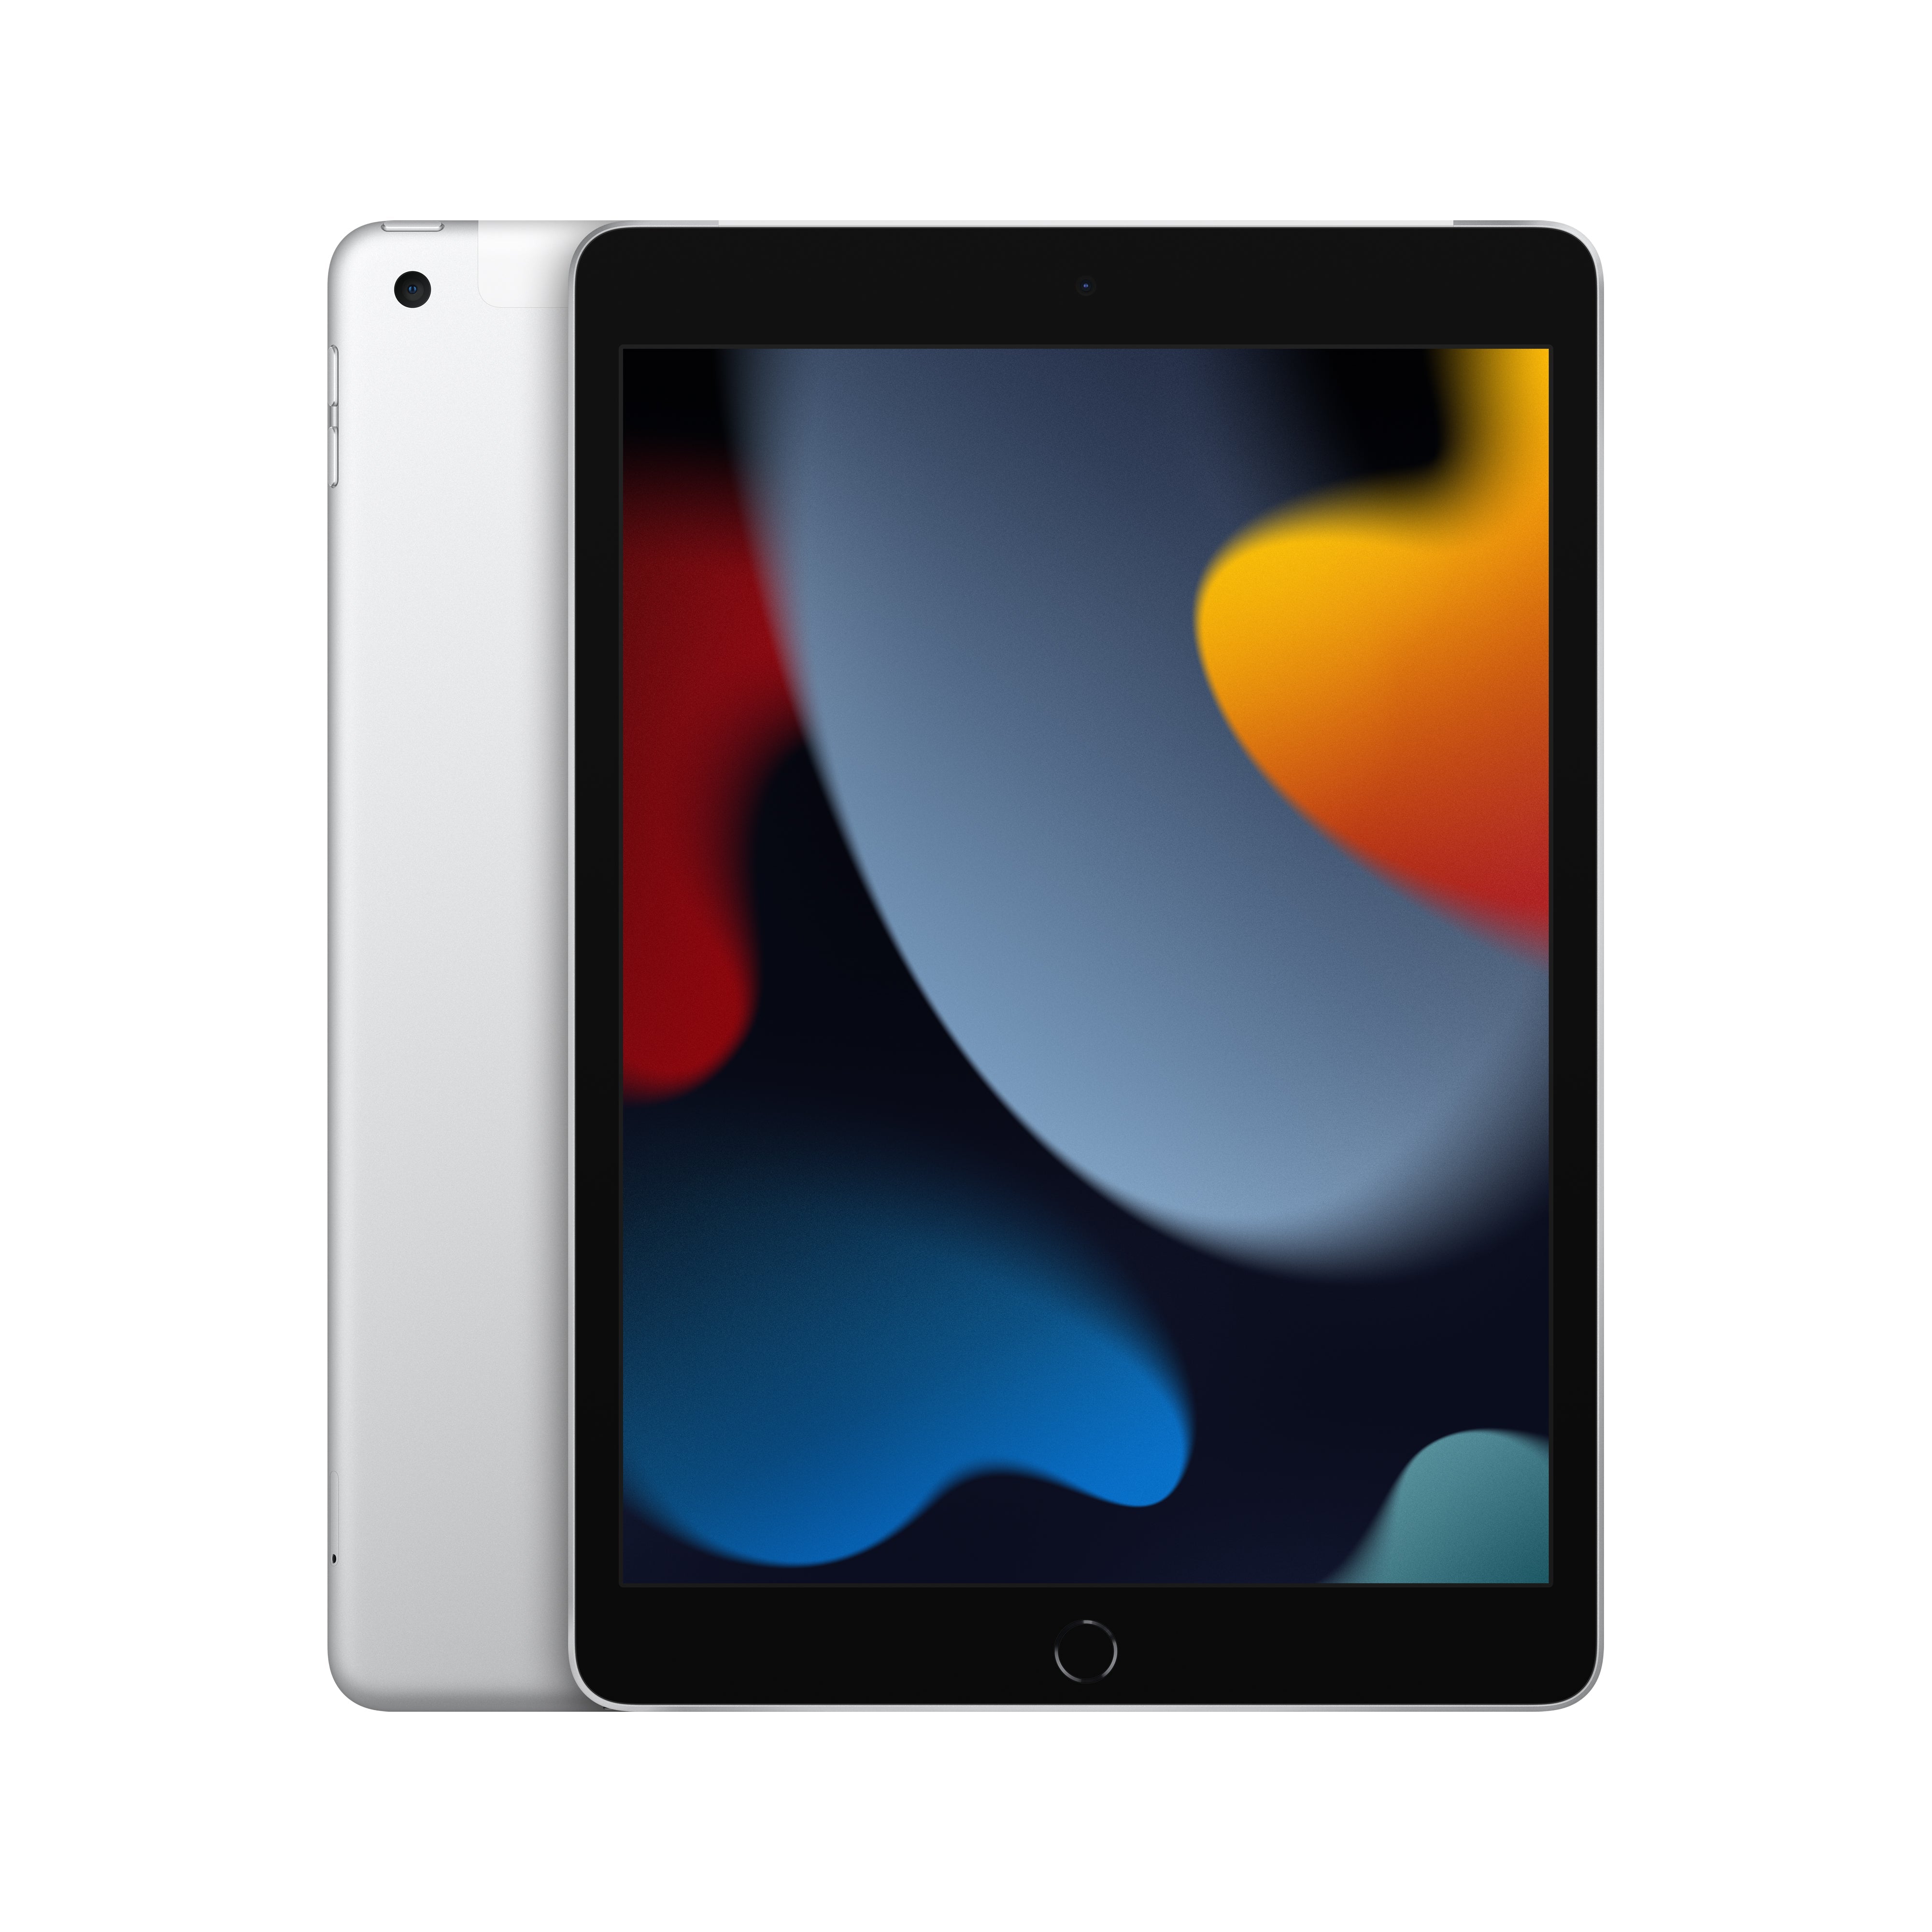 iPad 9th Gen - New Gauge Digital